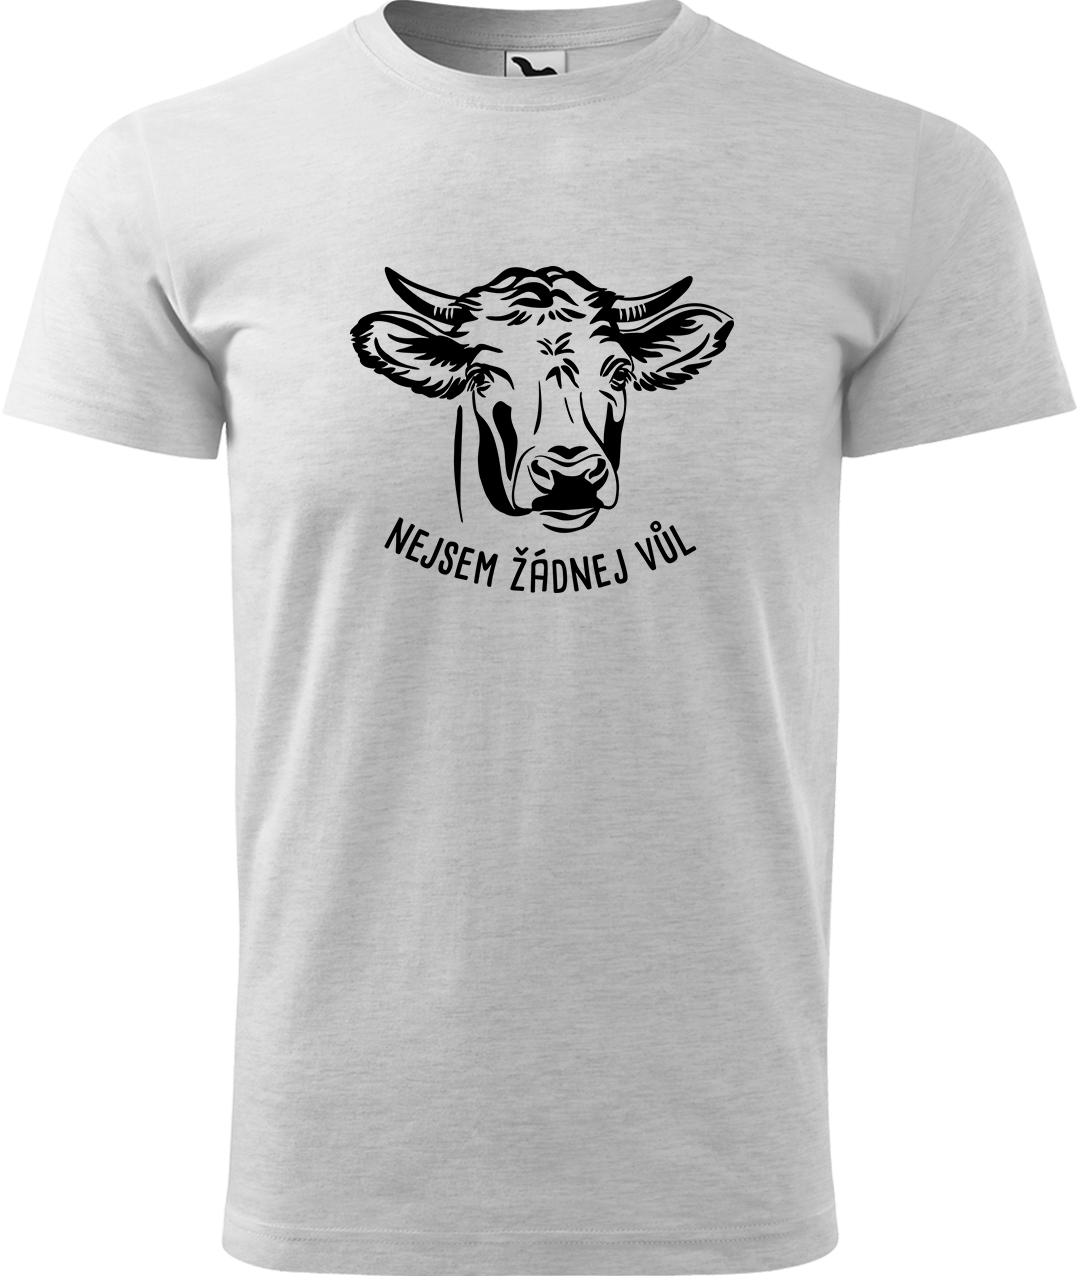 Pánské tričko s krávou - Nejsem žádnej vůl Velikost: XL, Barva: Světle šedý melír (03), Střih: pánský